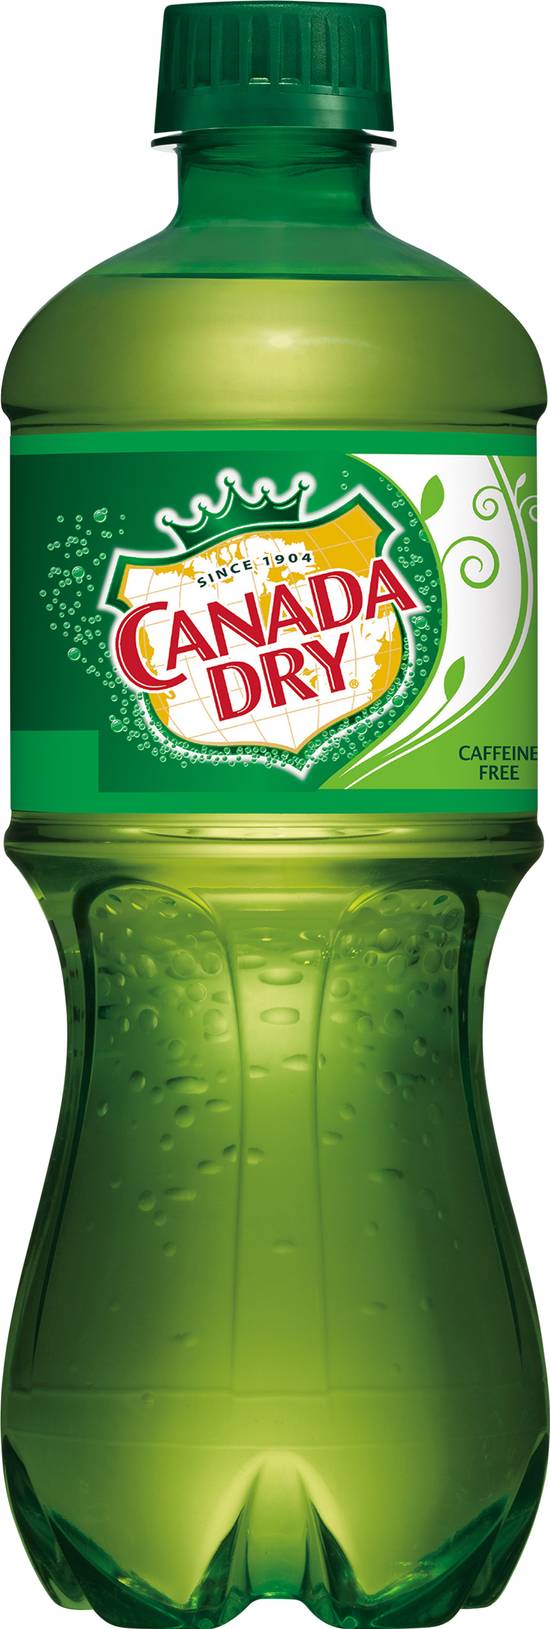 Canada Dry Ginger Ale Soda (20 fl oz)